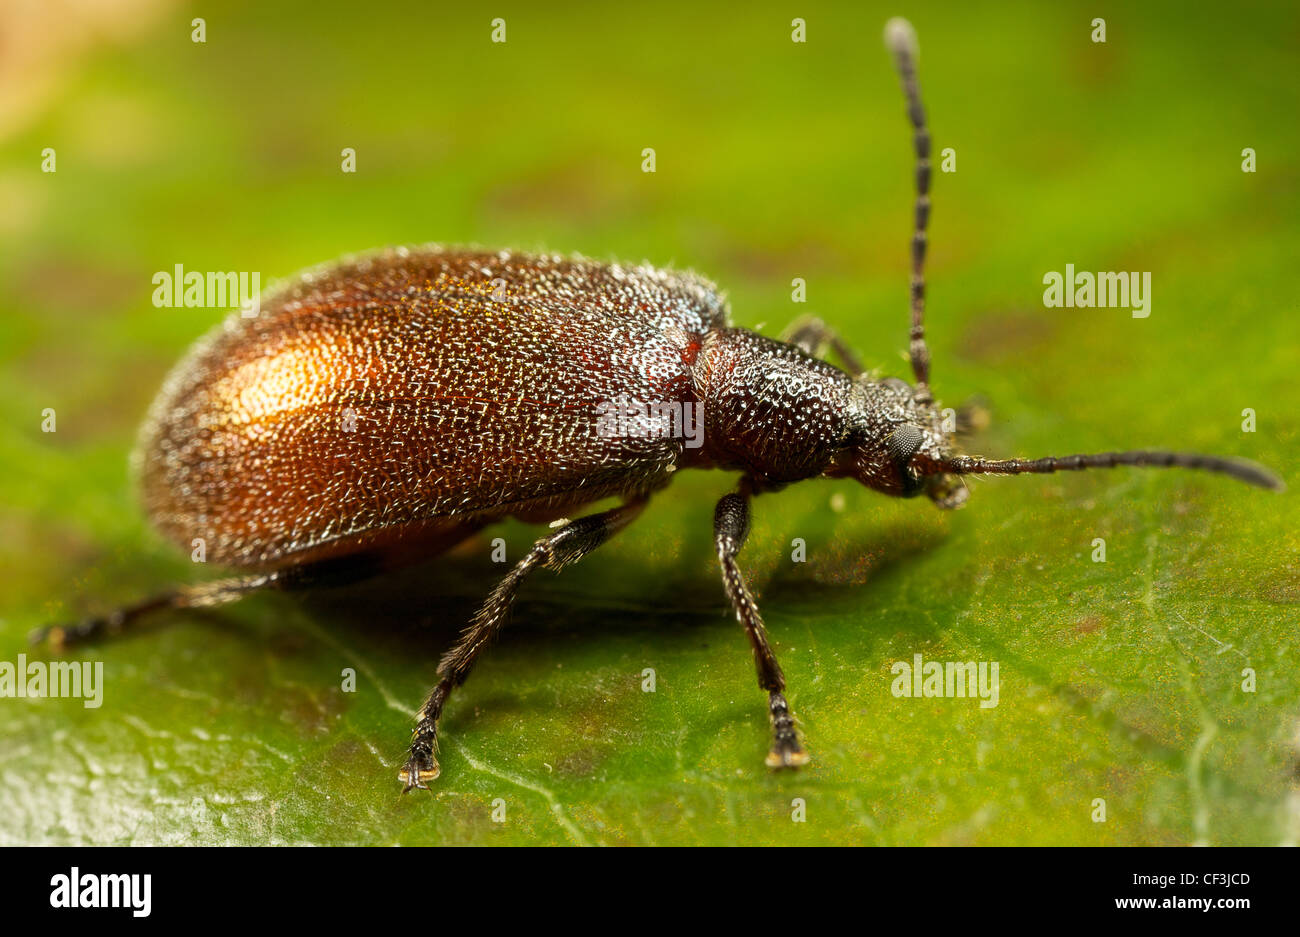 beetle on leaf Stock Photo